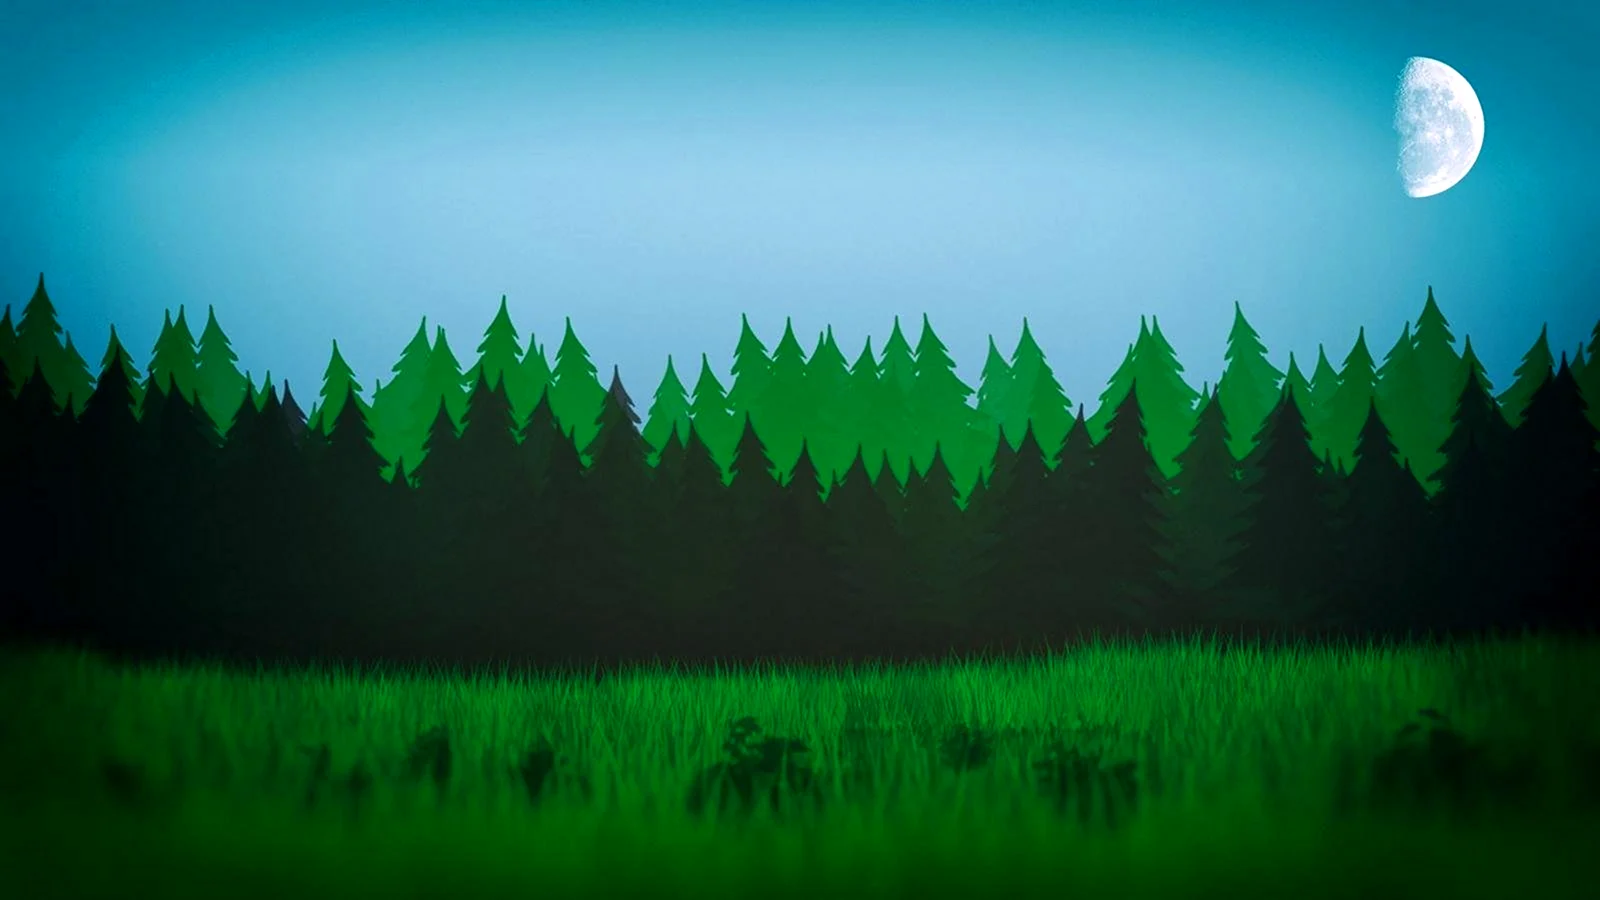 Лес - фото обои на рабочий стол, картинки с лесом